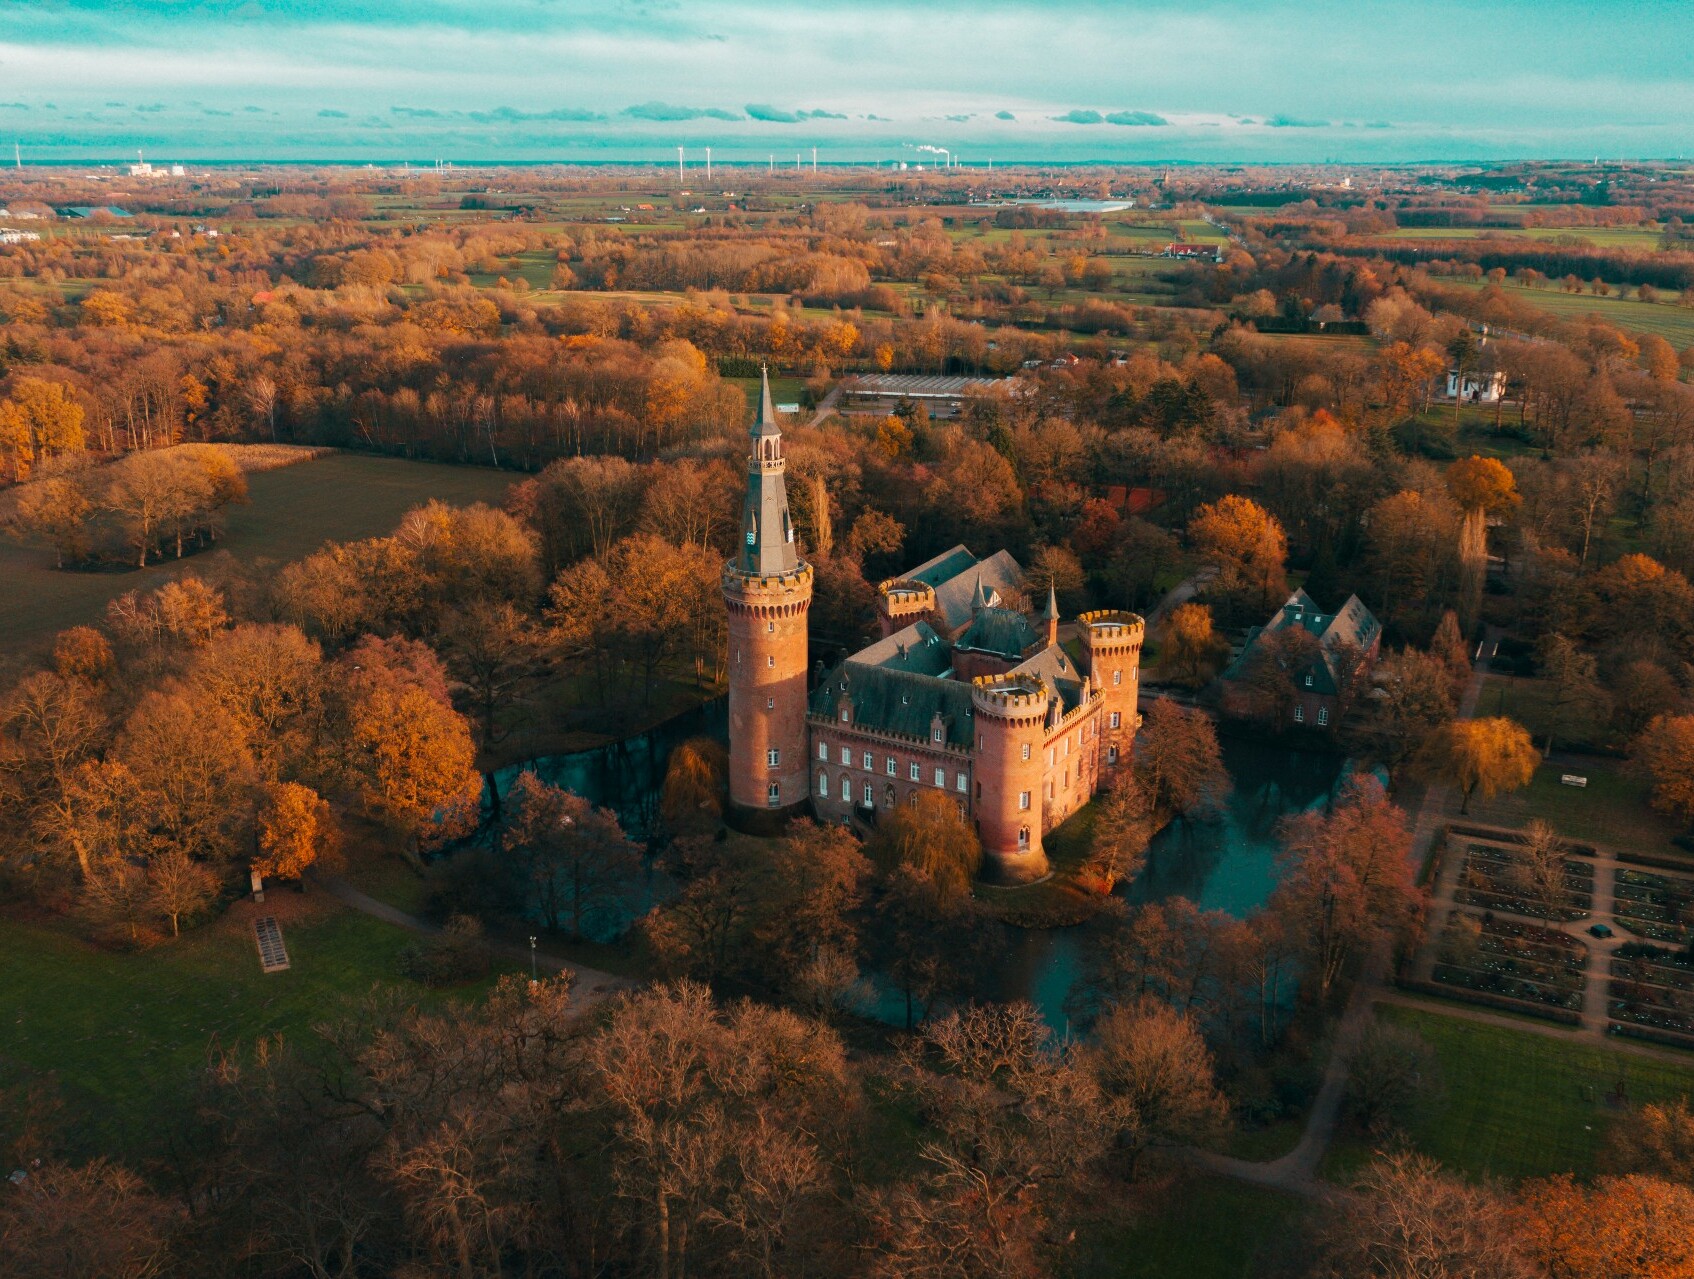 Drohnenaufnahme von Schloss Moyland in Bedburg-Hau am Niederrhein, umgeben von in rotes Licht getauchten Wäldern und Feldern. © Tourismus NRW e.V./Johannes Höhn